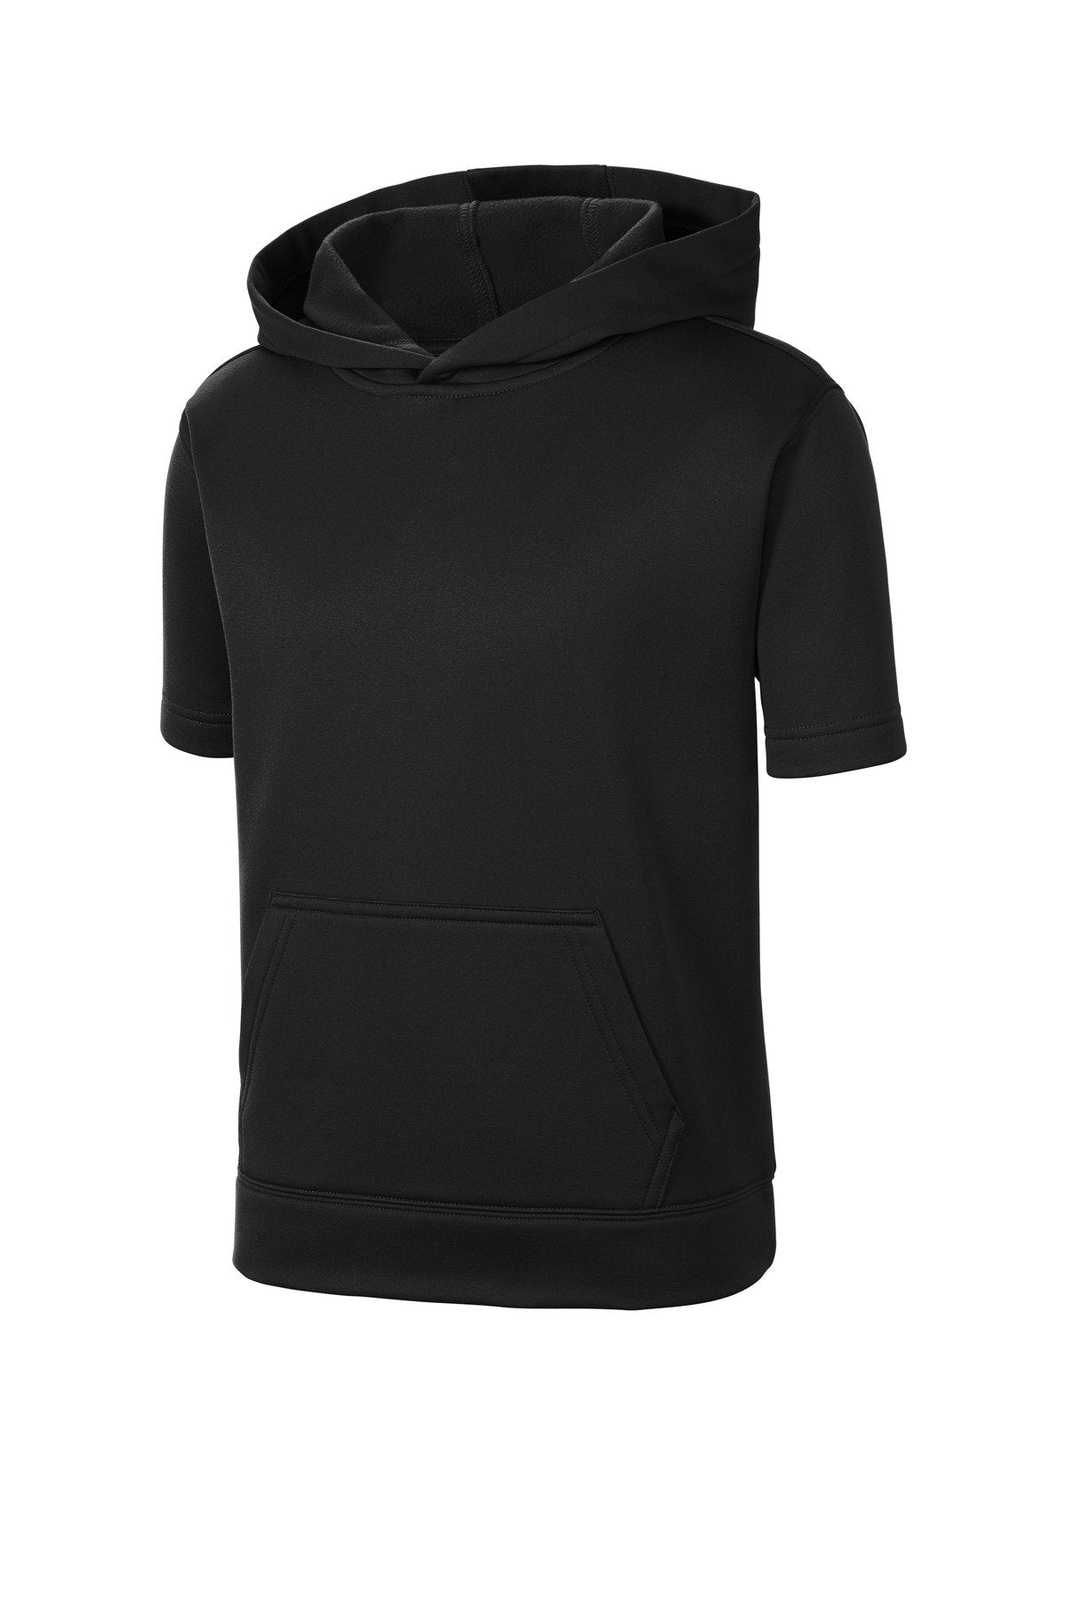 Sport-Tek YST251 Youth Sport-Wick Fleece Short Sleeve Hooded Pullover - Black - HIT a Double - 3